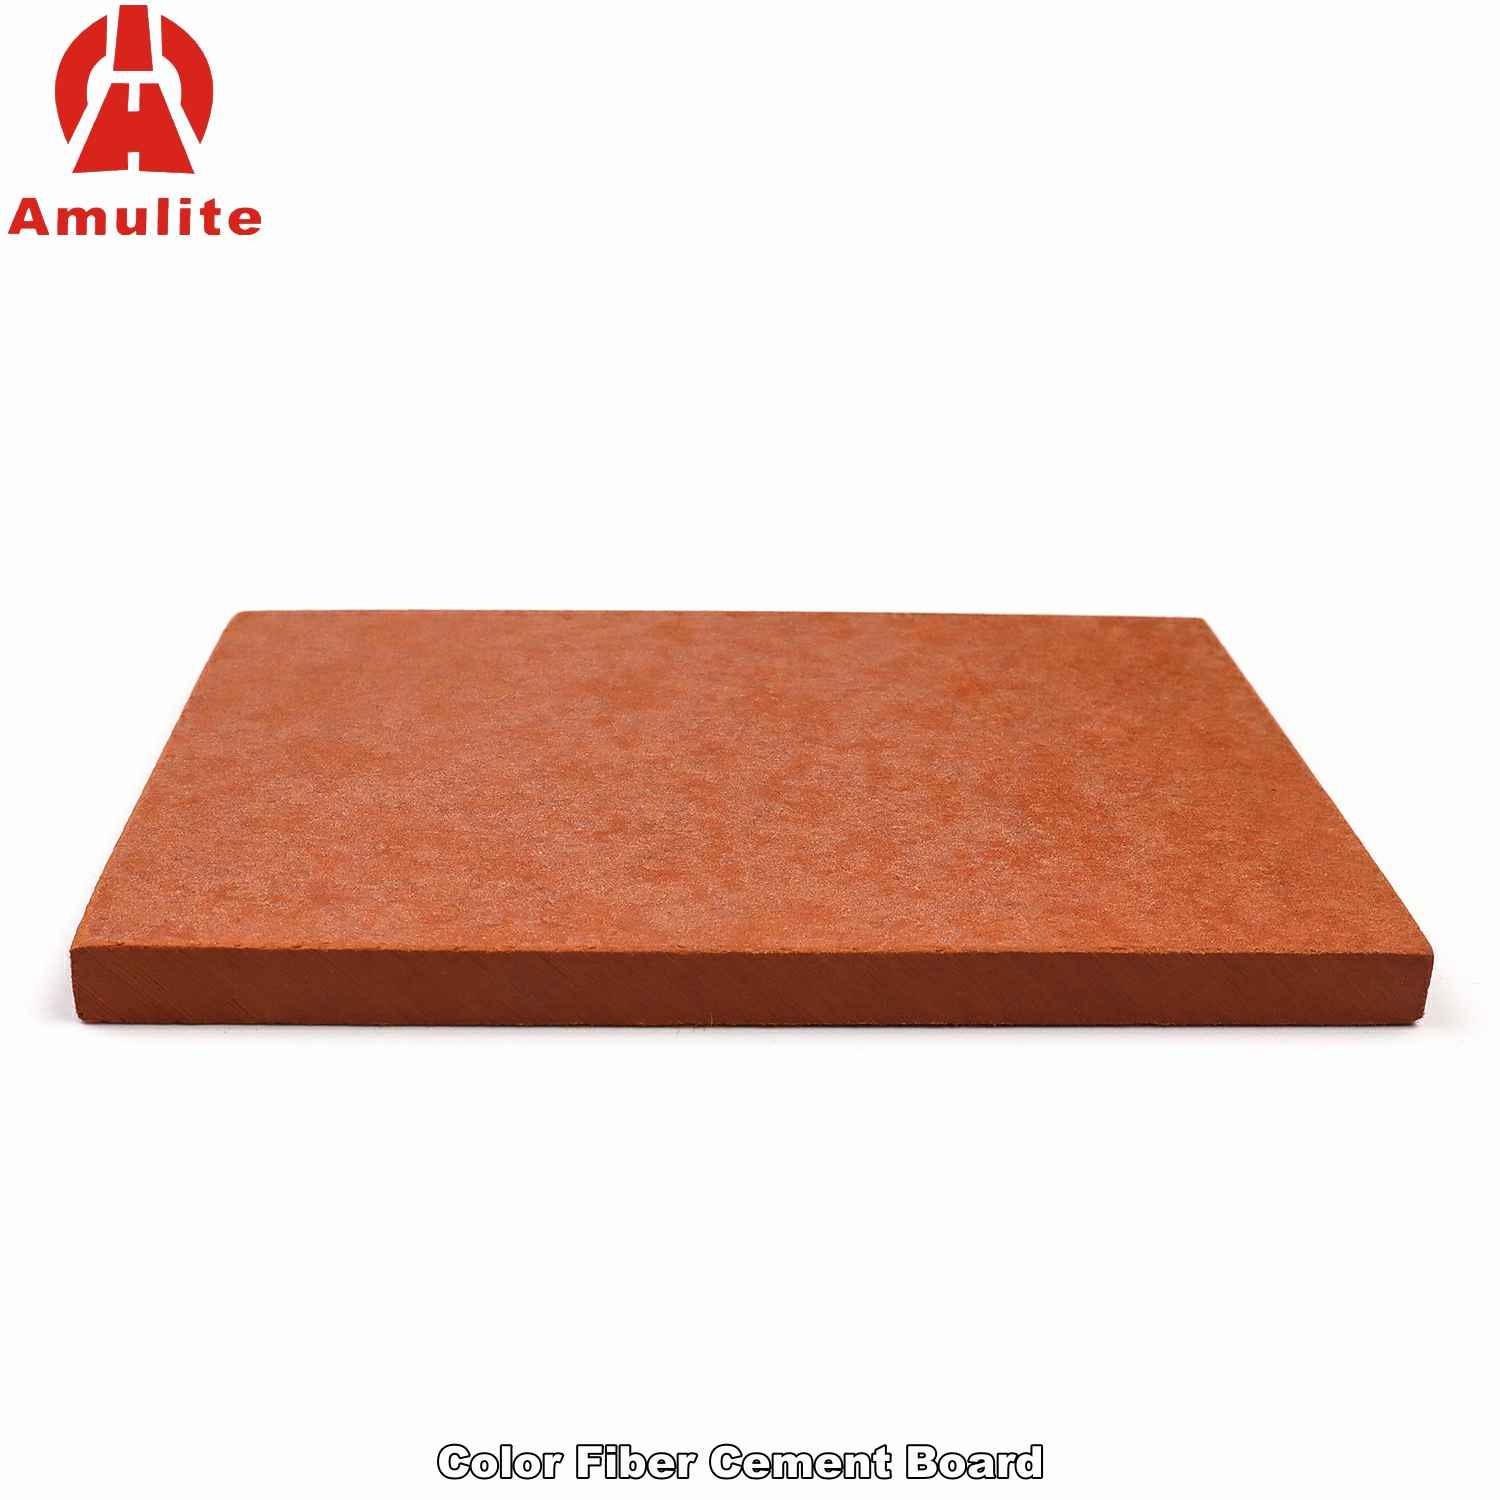 Color Fiber Cement Board (23)